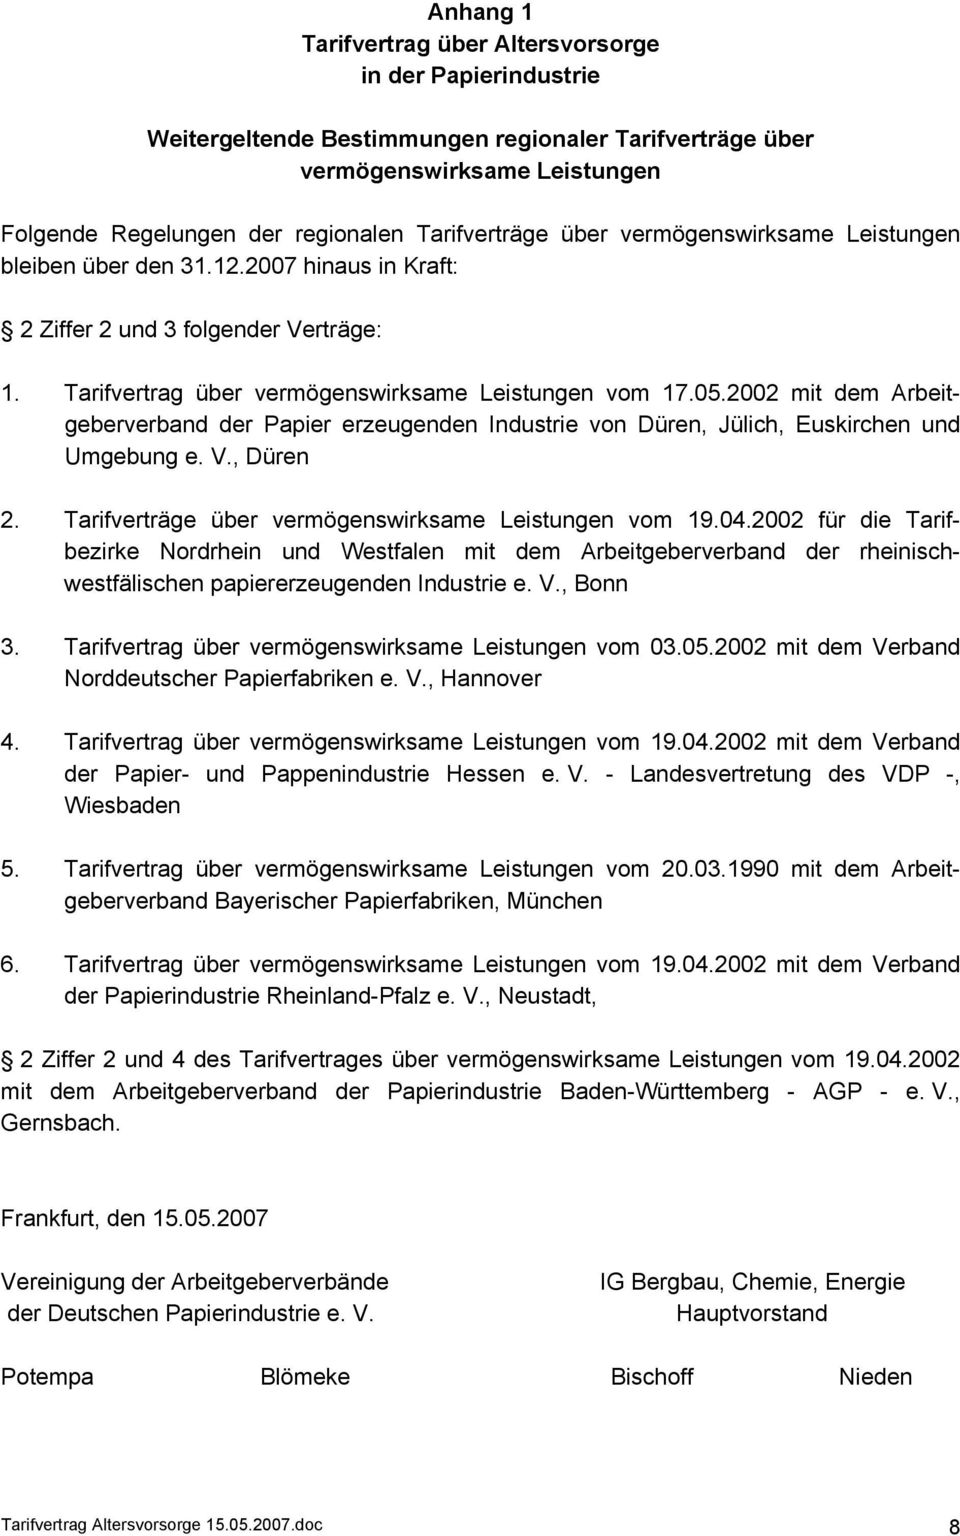 2002 mit dem Arbeitgeberverband der Papier erzeugenden Industrie von Düren, Jülich, Euskirchen und Umgebung e. V., Düren 2. Tarifverträge über vermögenswirksame Leistungen vom 19.04.